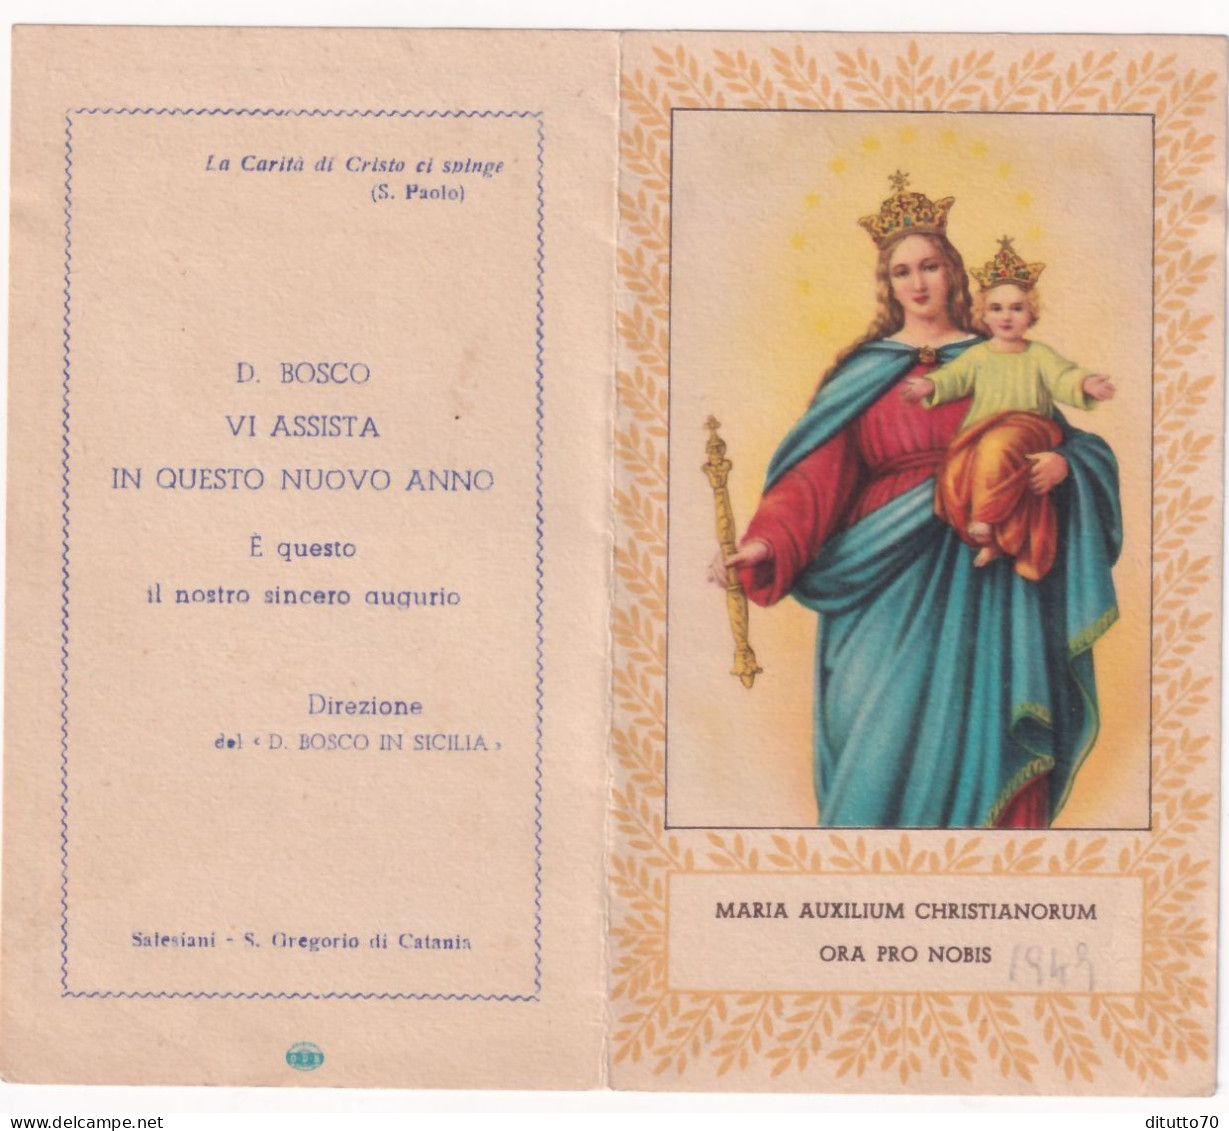 Calendarietto - Salesiano - Direzione Del D.bosco In Sicilia - Anno 1949 - Kleinformat : 1941-60